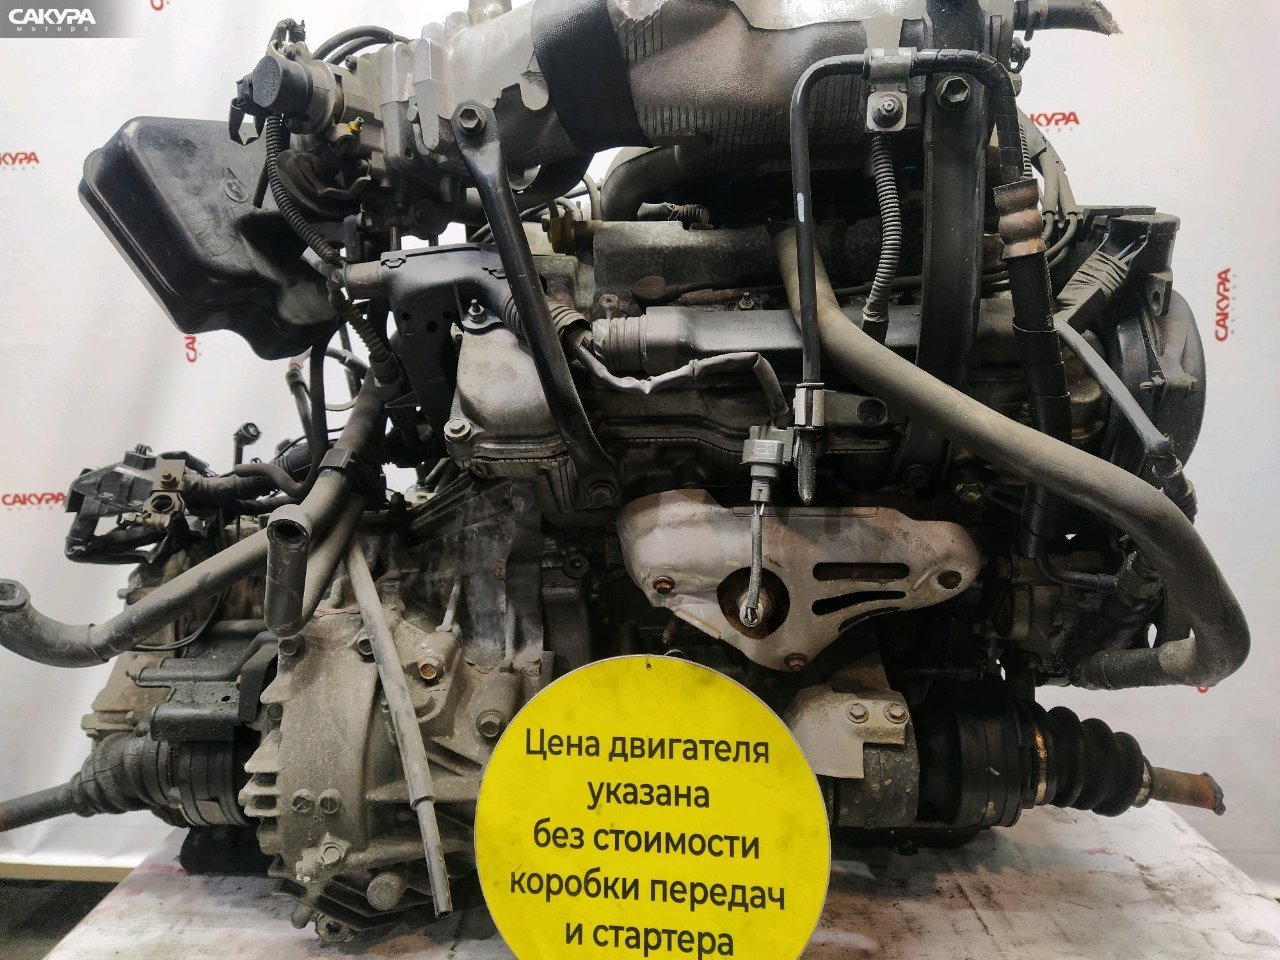 Двигатель Toyota Windom MCV20 1MZ-FE: купить в Сакура Красноярск.